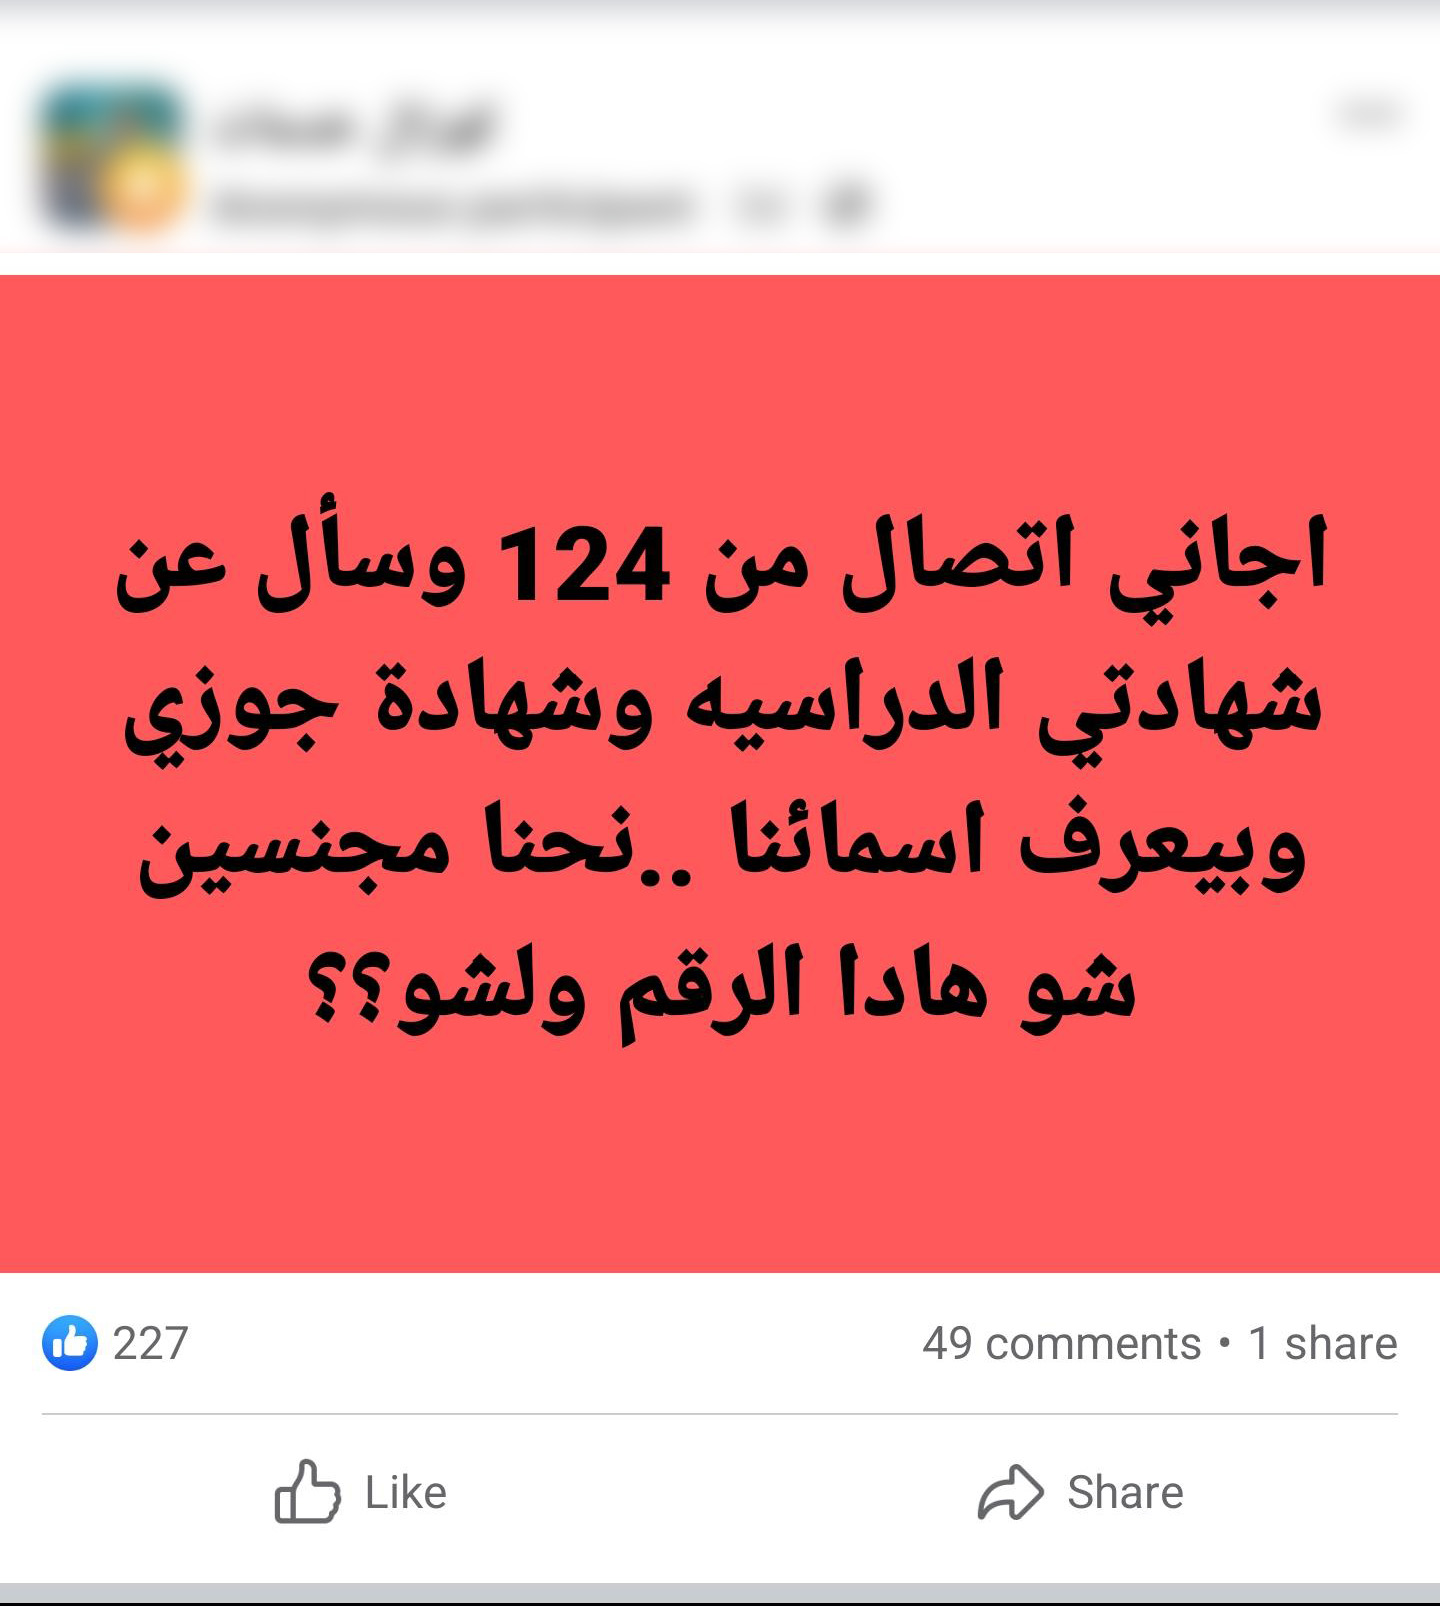 شابة سورية تستفسر عبر مواقع التواصل الاجتماعي عن الرقم المتصل بها لمعرفة سبب الاتصال (فيس بوك)